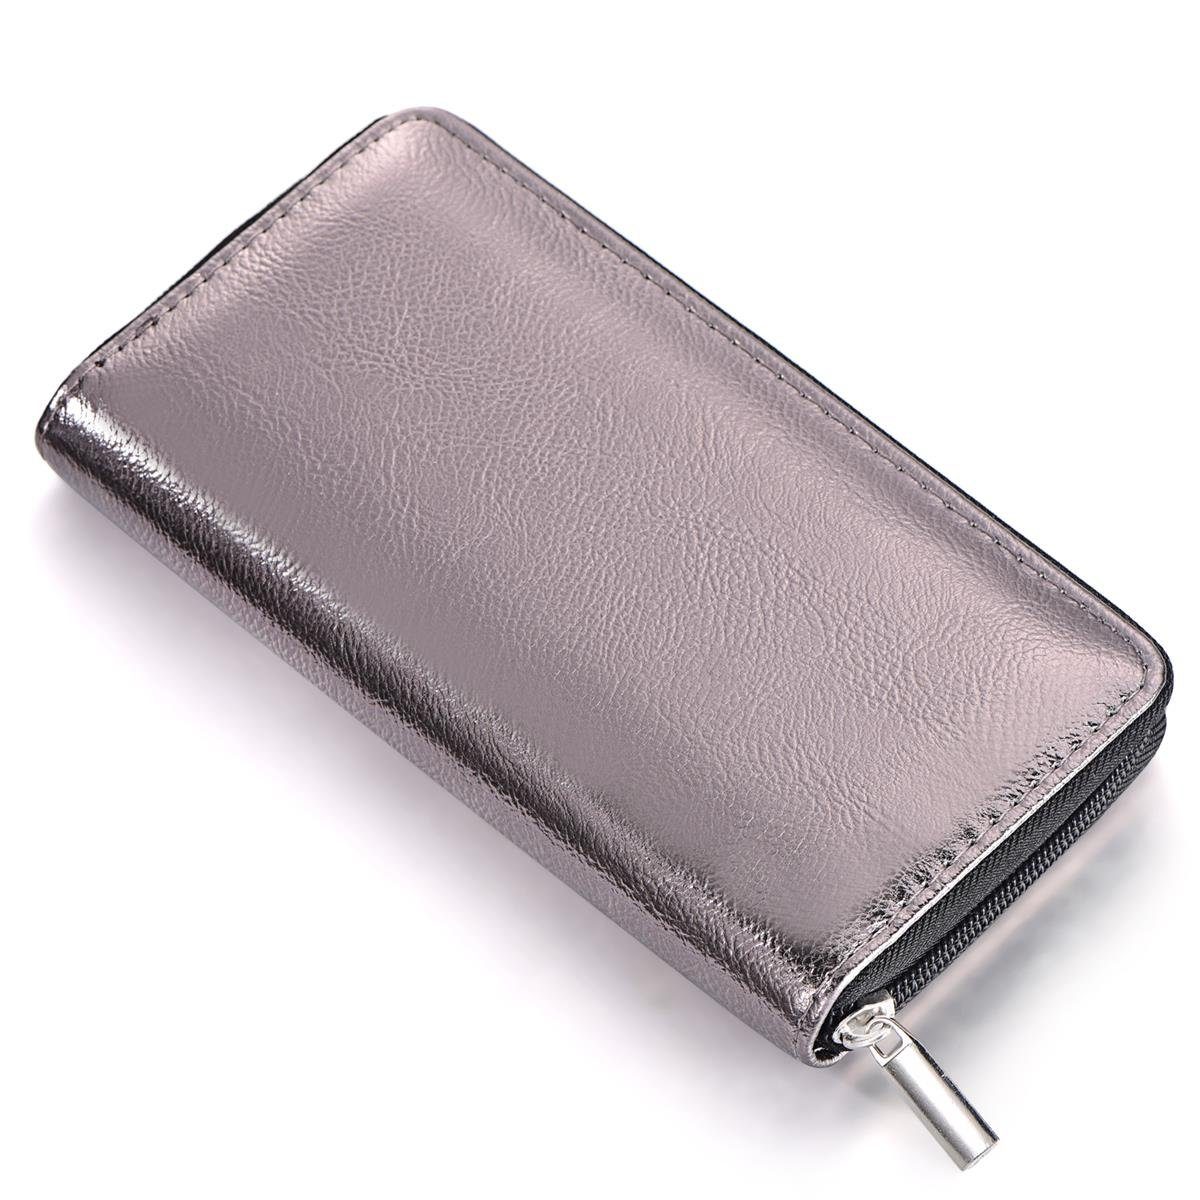 DonDon Geldbörse Portemonnaie Geldbeutel weich 20 x 10 x 2,5 cm (Packung, 1-tlg), Geldbörse für Damen und Mädchen, Metallic-Look, mit Reißverschluss grau metallic